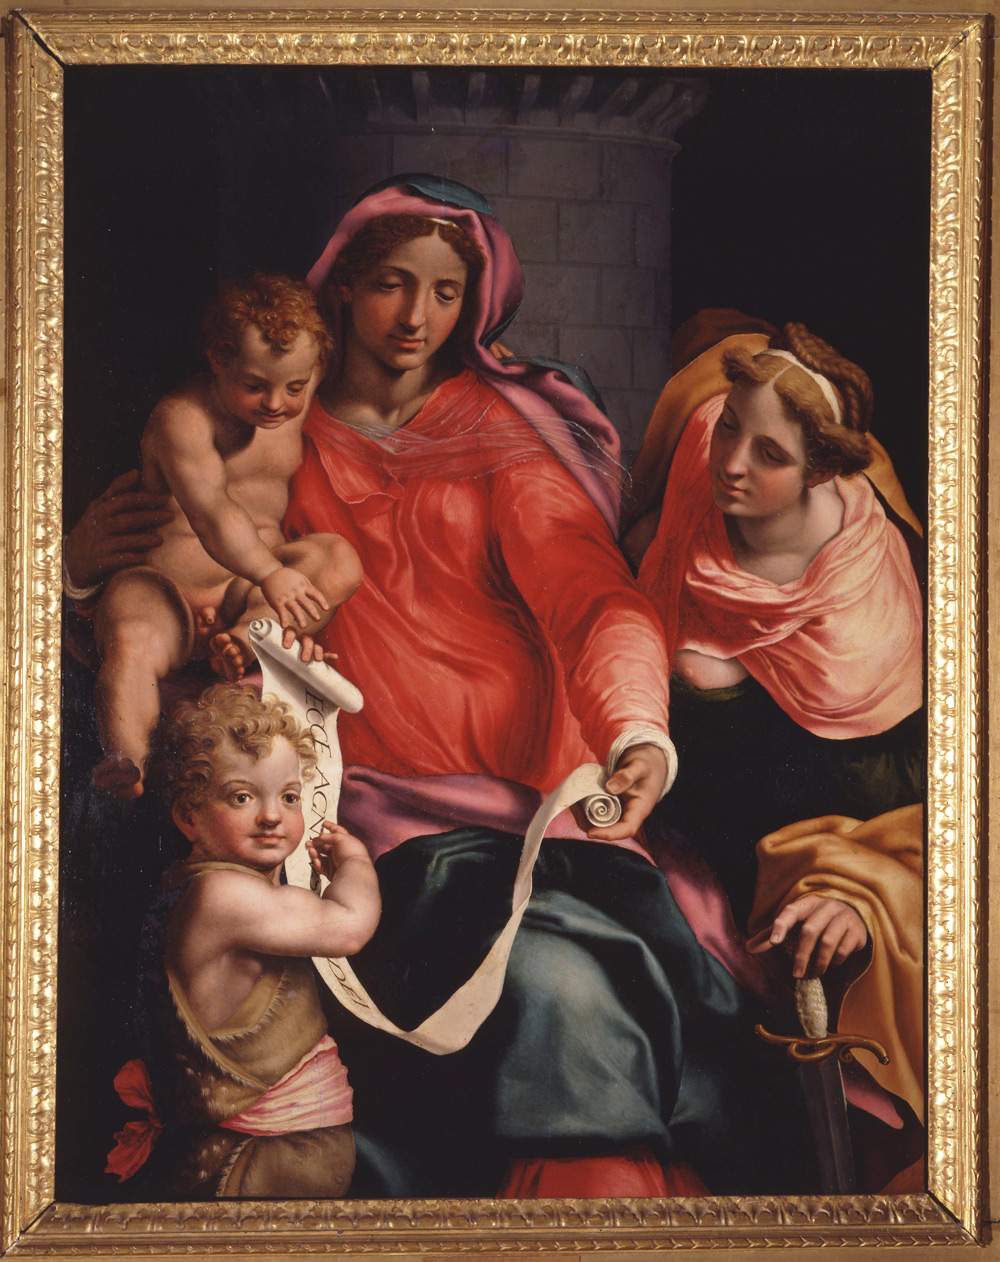 Importantissimo acquisto per gli Uffizi, arriva la Madonna di Daniele da Volterra: riuniti i capolavori d'Elci